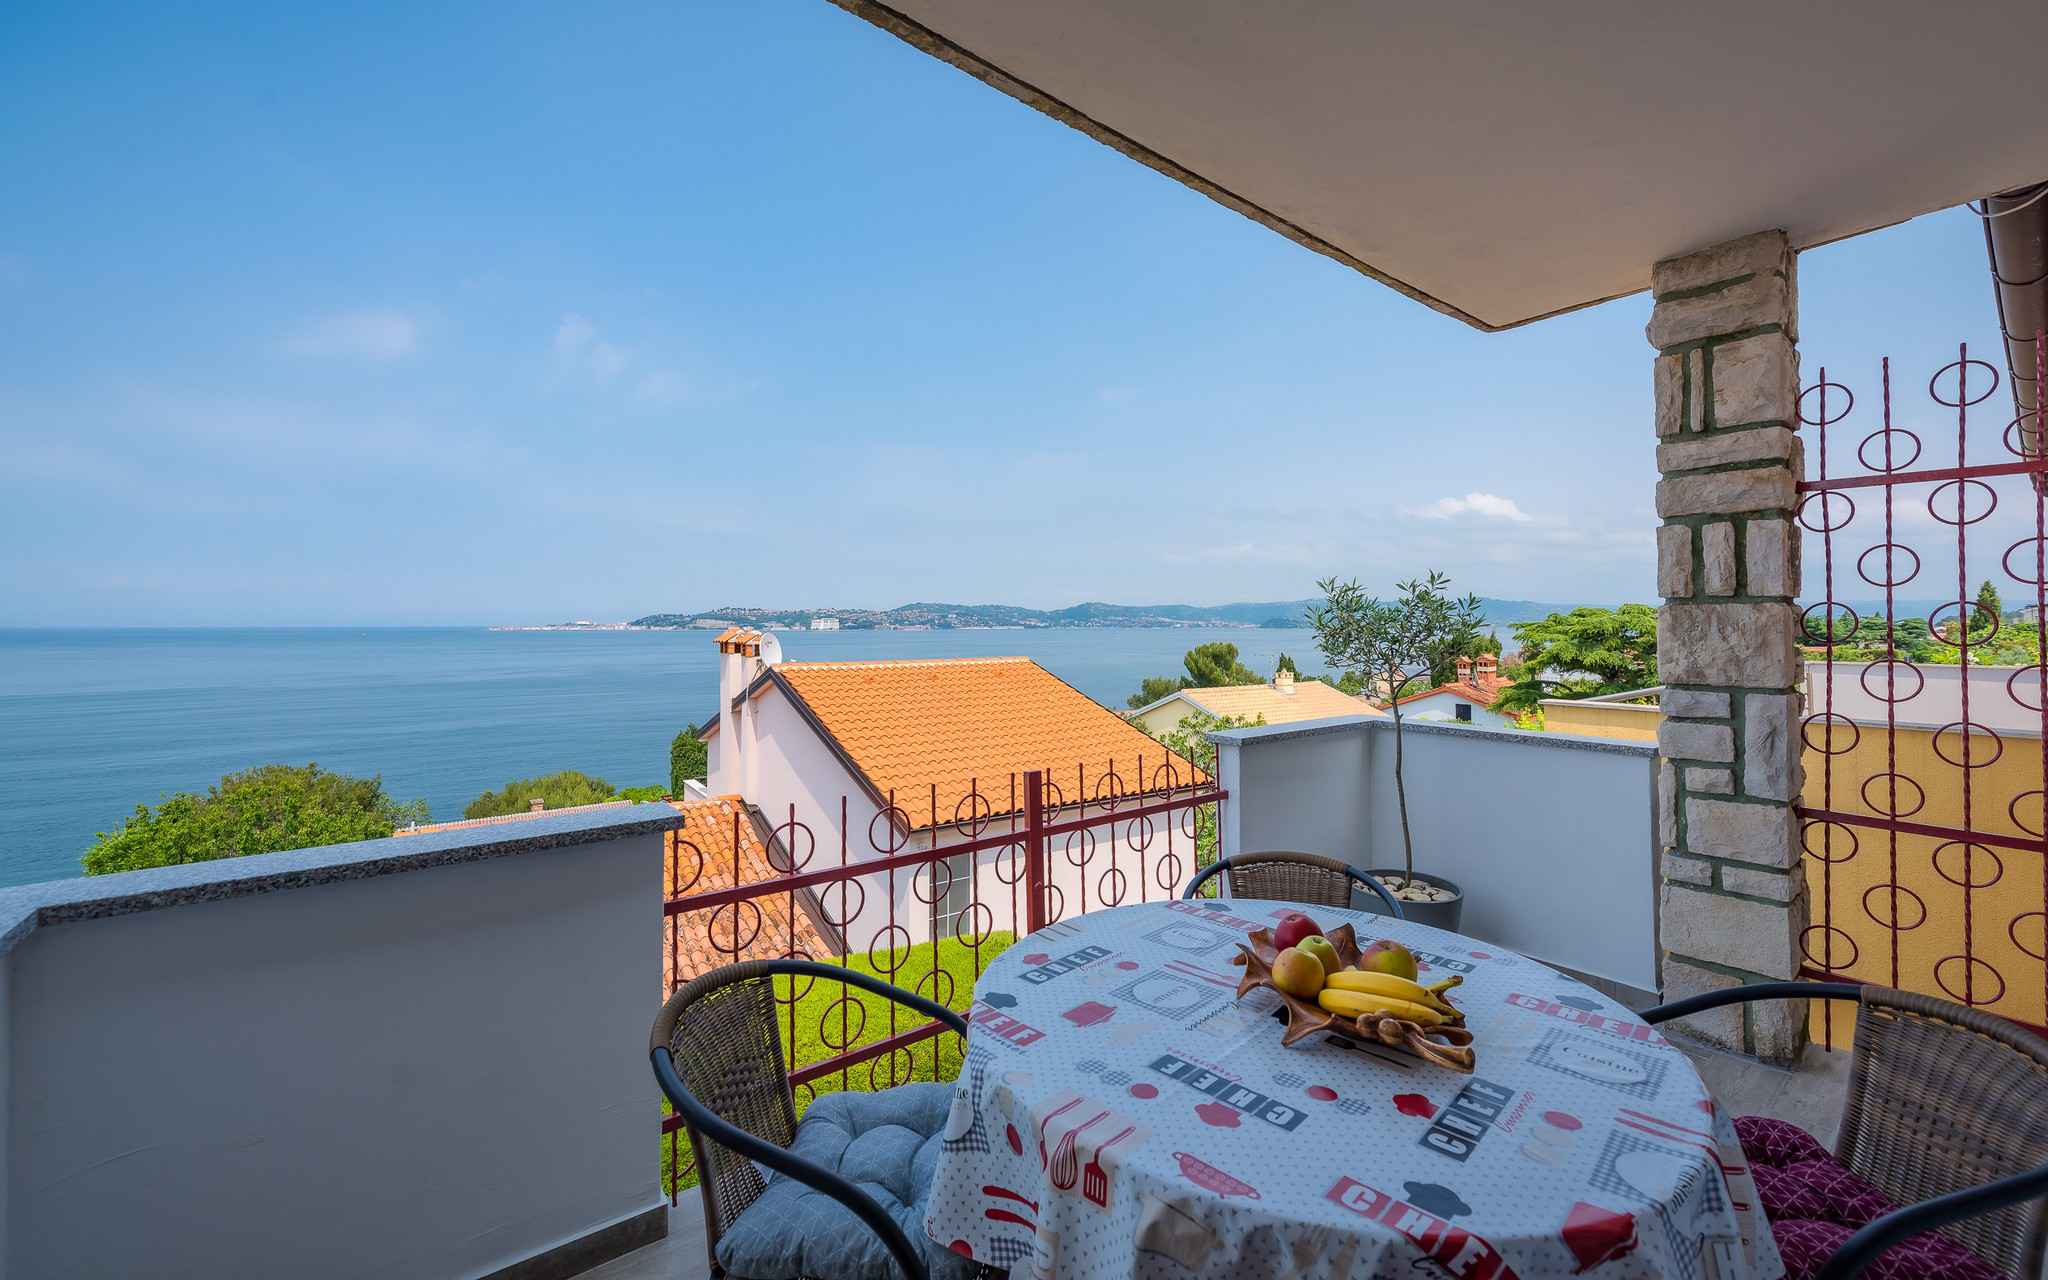 Ferienwohnung mit Blick auf das Meer  in Kroatien